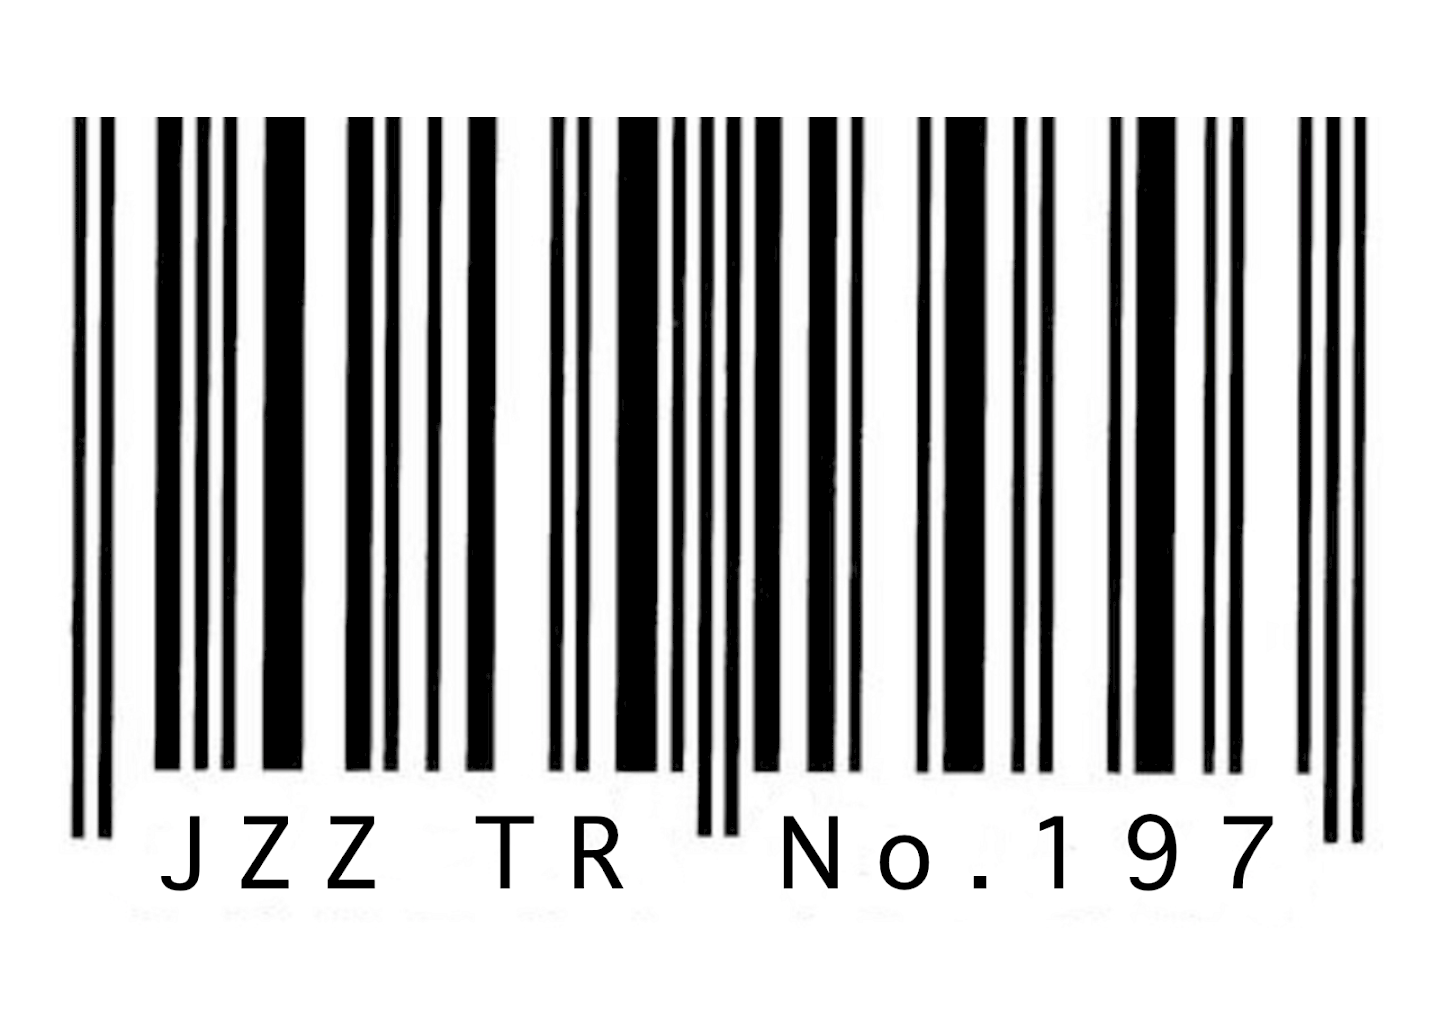 Jazztrio No. 197